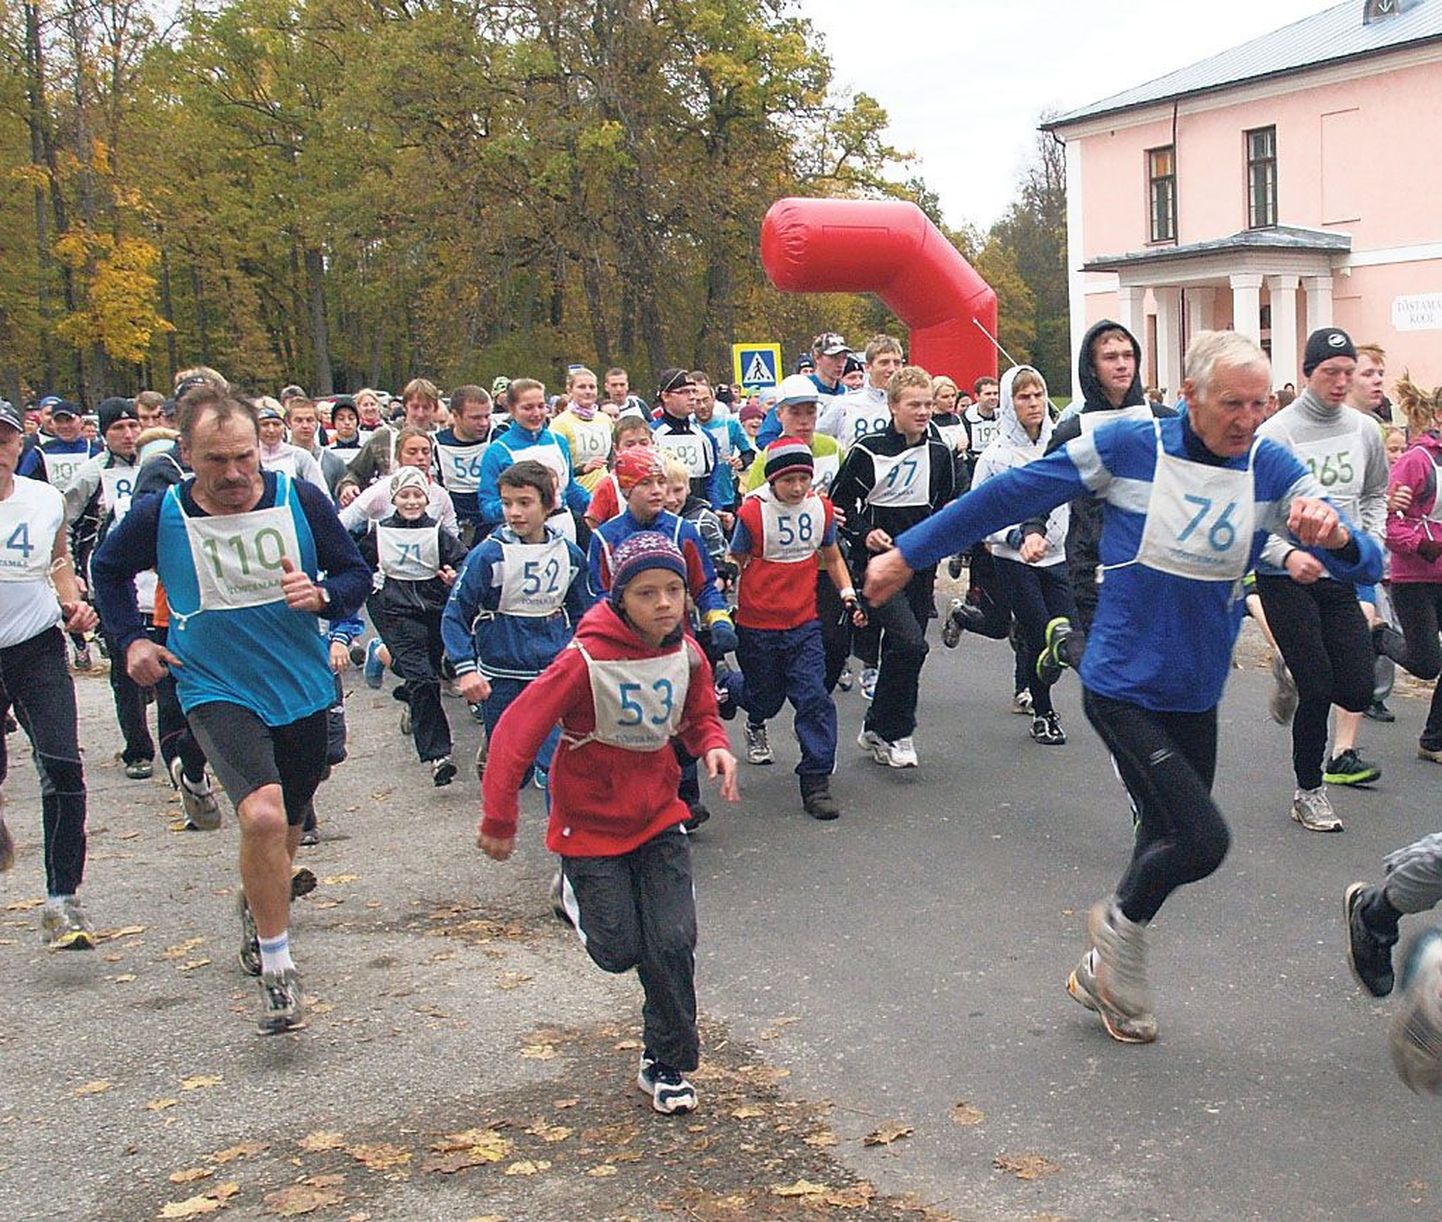 Täna juba 29. korda toimuv Tõstamaa valla jooks toob kokku paarsada jooksusõpra, kelle seast leiab suurema osa Pärnumaa kõvematest jooksumeestest.